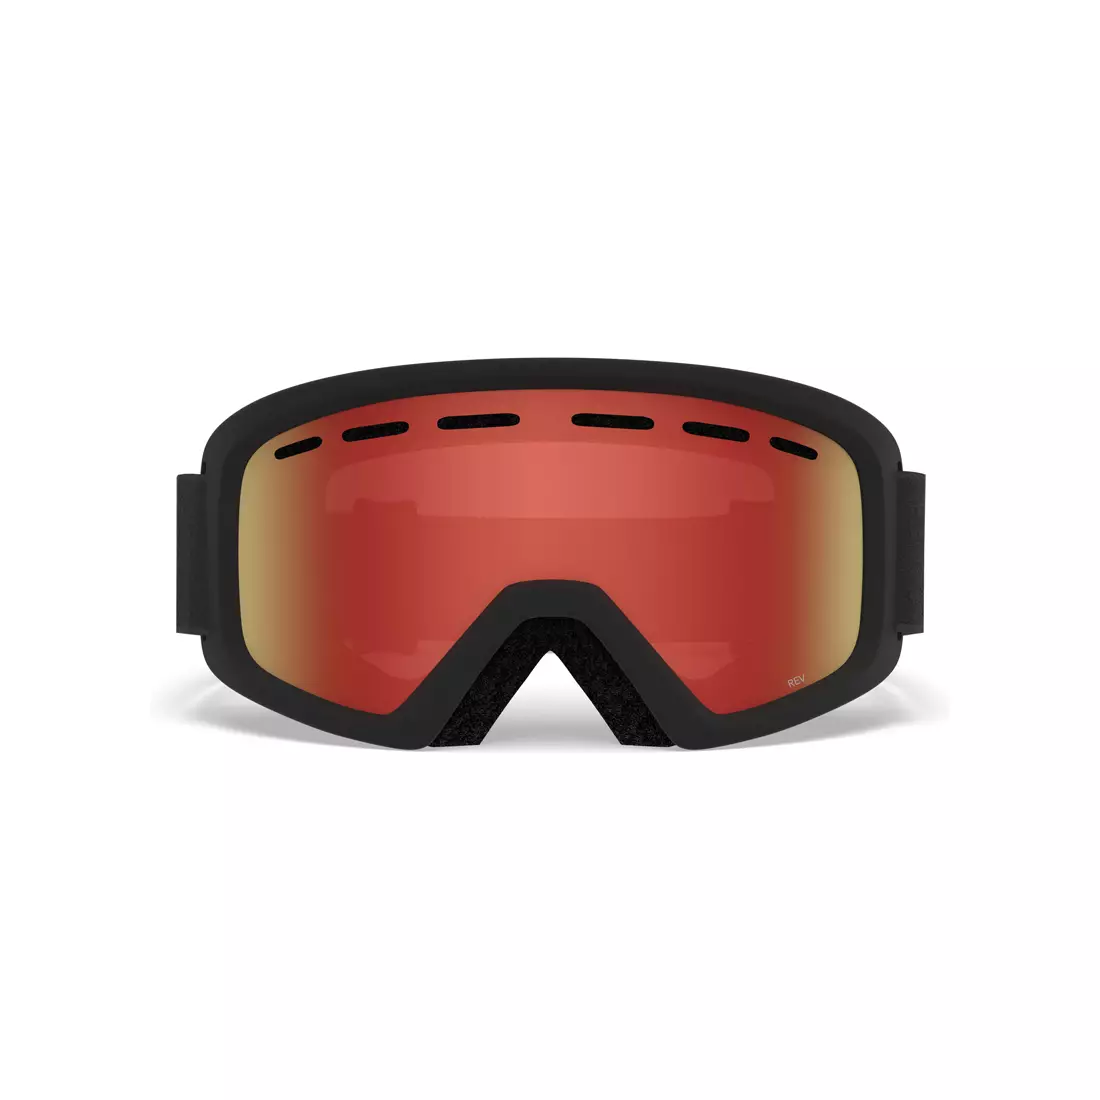 Juniorské lyžiarske / snowboardové okuliare REV BLACK ZOOM GR-7094685